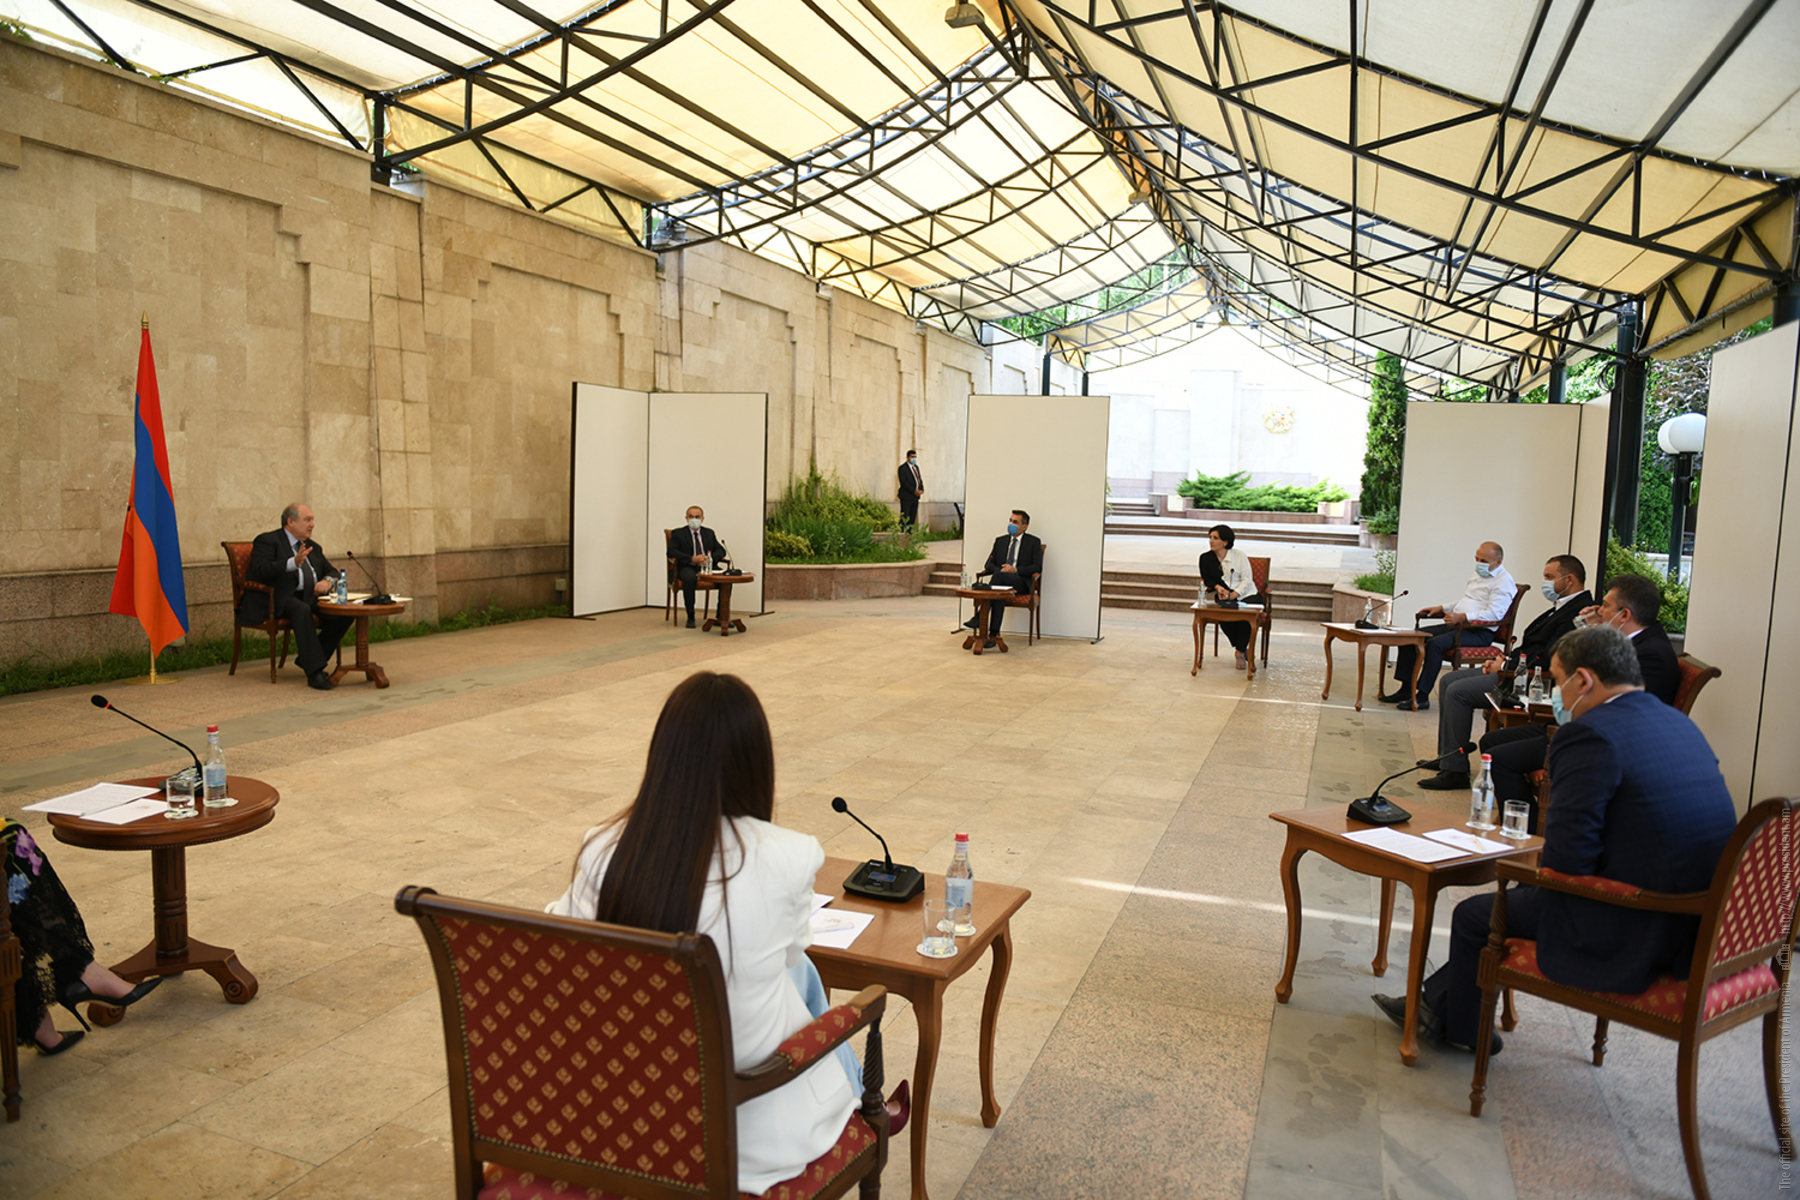 Հանրապետության նախագահ Արմեն Սարգսյանը հանդիպում է ունեցել գյուղատնտեսության, սննդի արտադրության, վերամշակող և սպասարկման ոլորտների մի խումբ ընկերությունների ղեկավարների հետ: ՏԵՍԱՆՅՈՒԹ